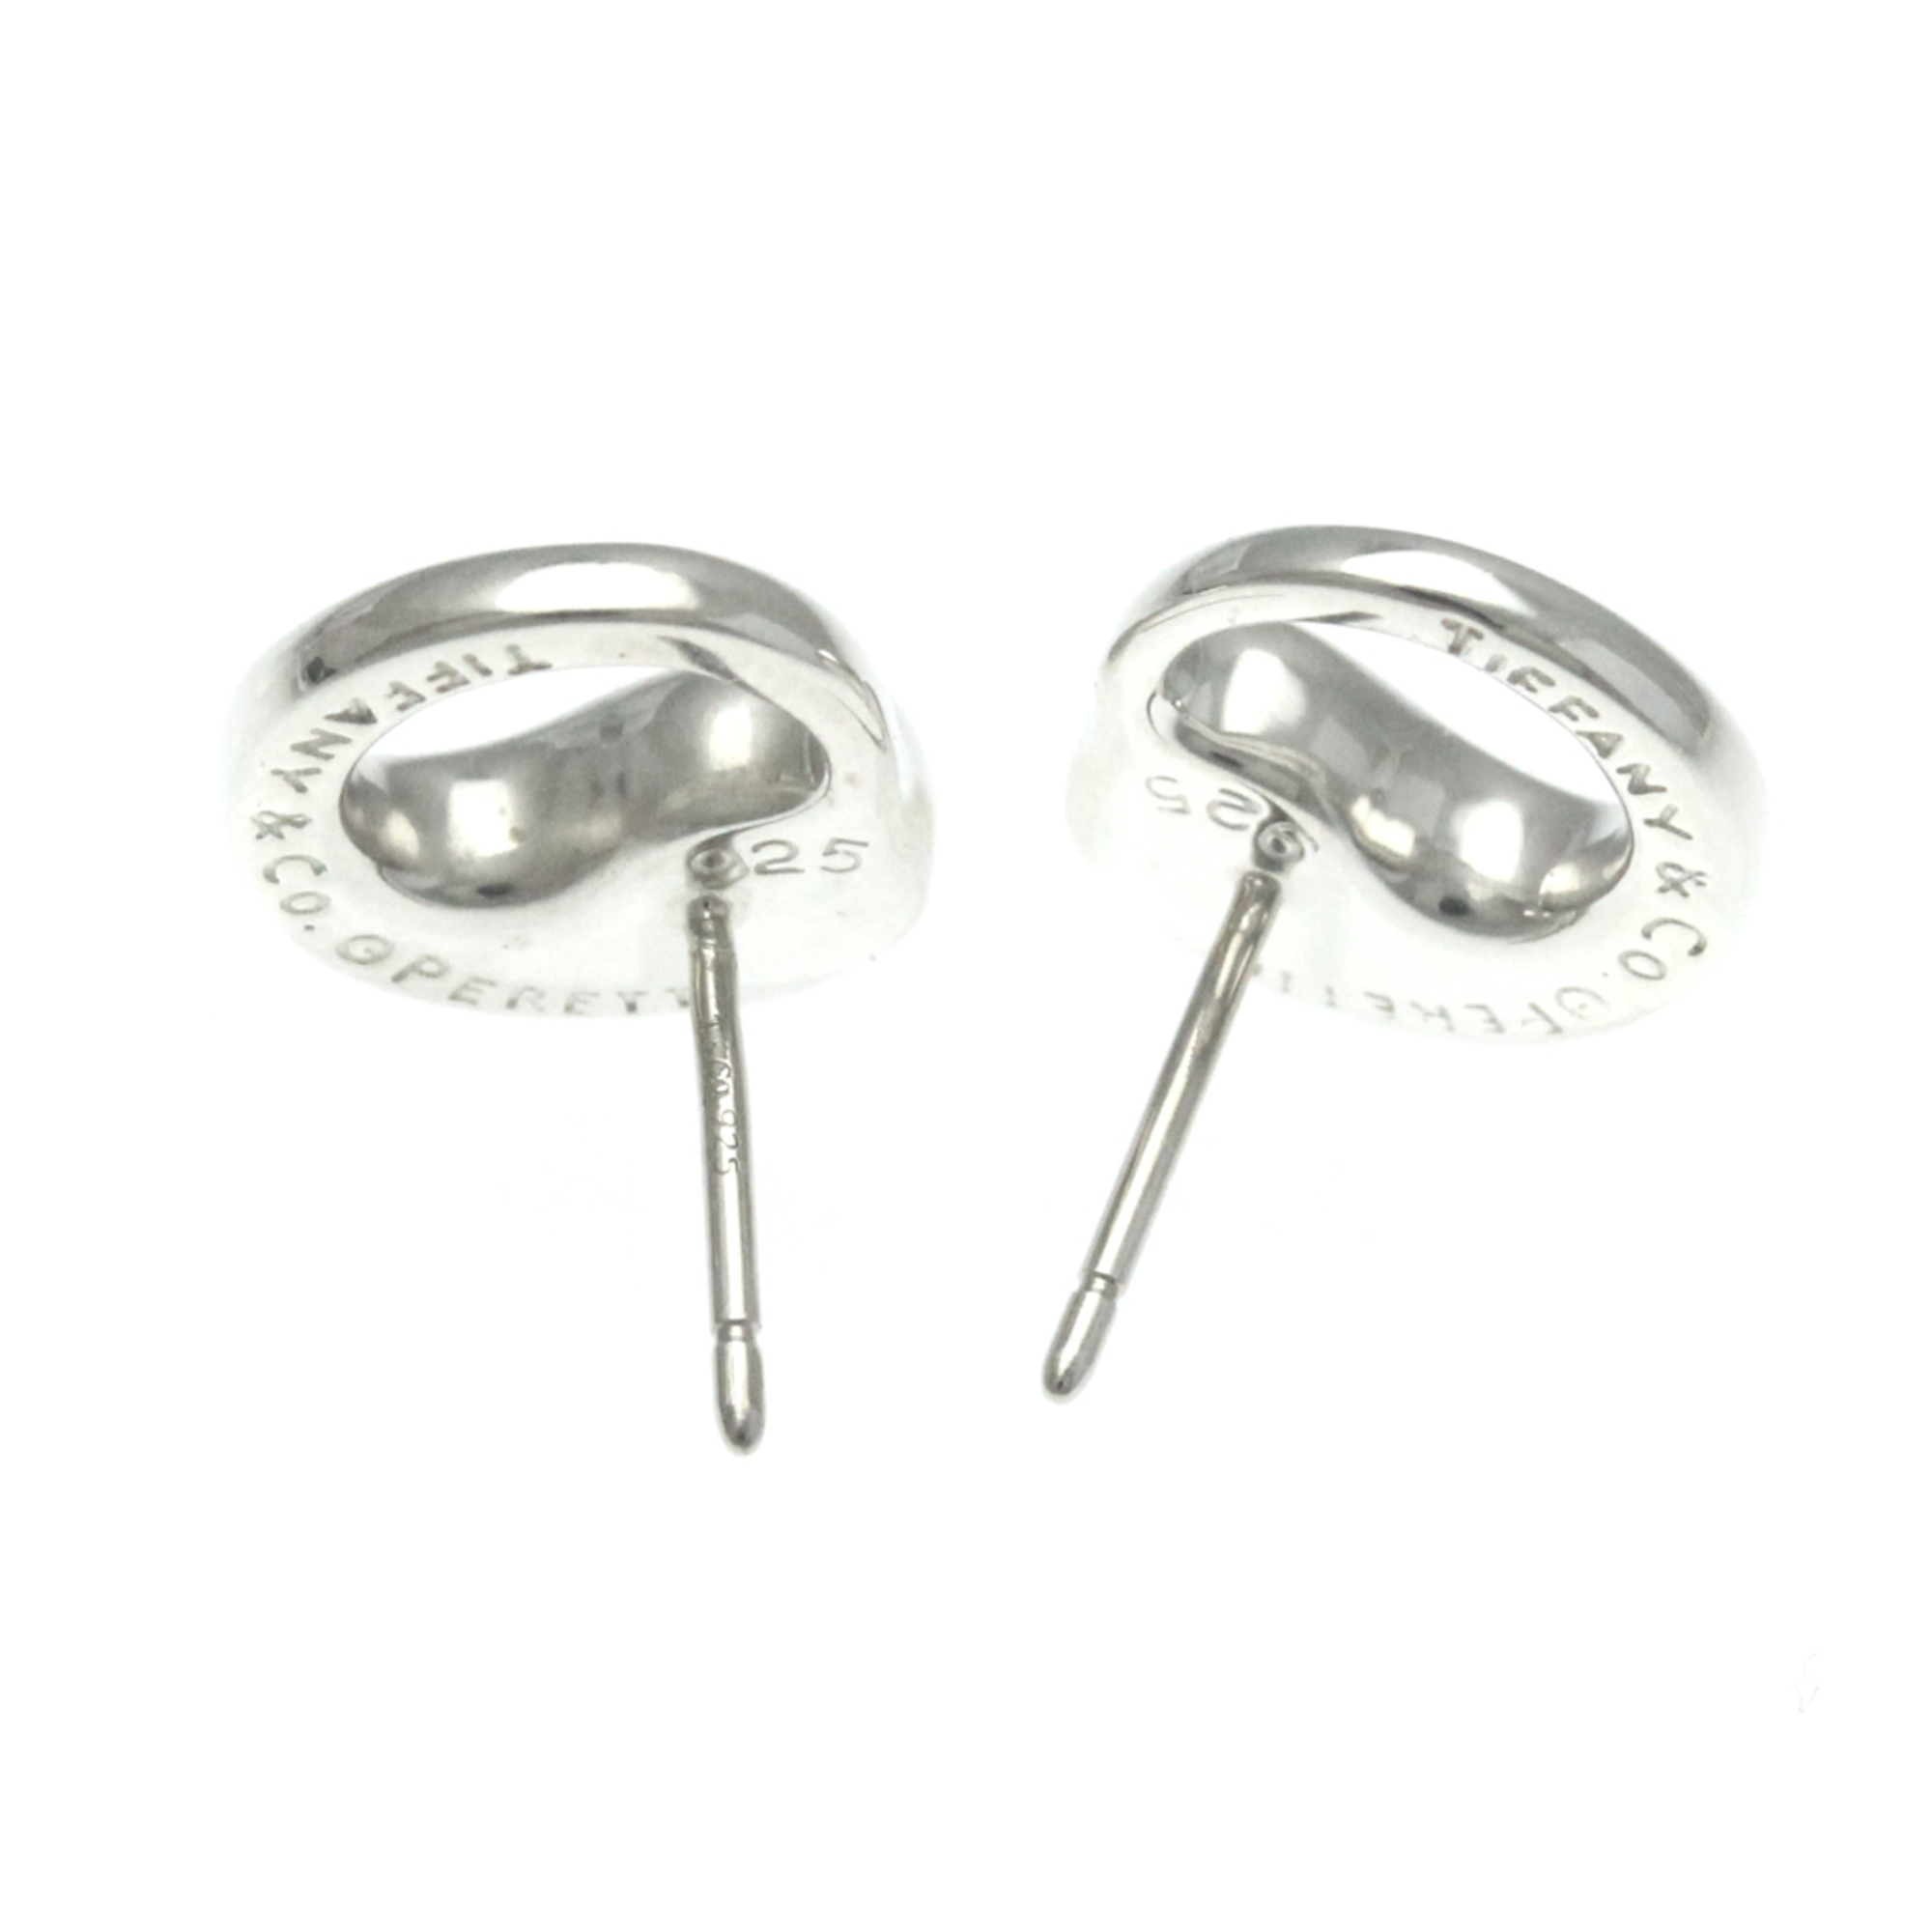 Tiffany Eternal Circle Earrings No Stone Silver 925 Stud Earrings Silver